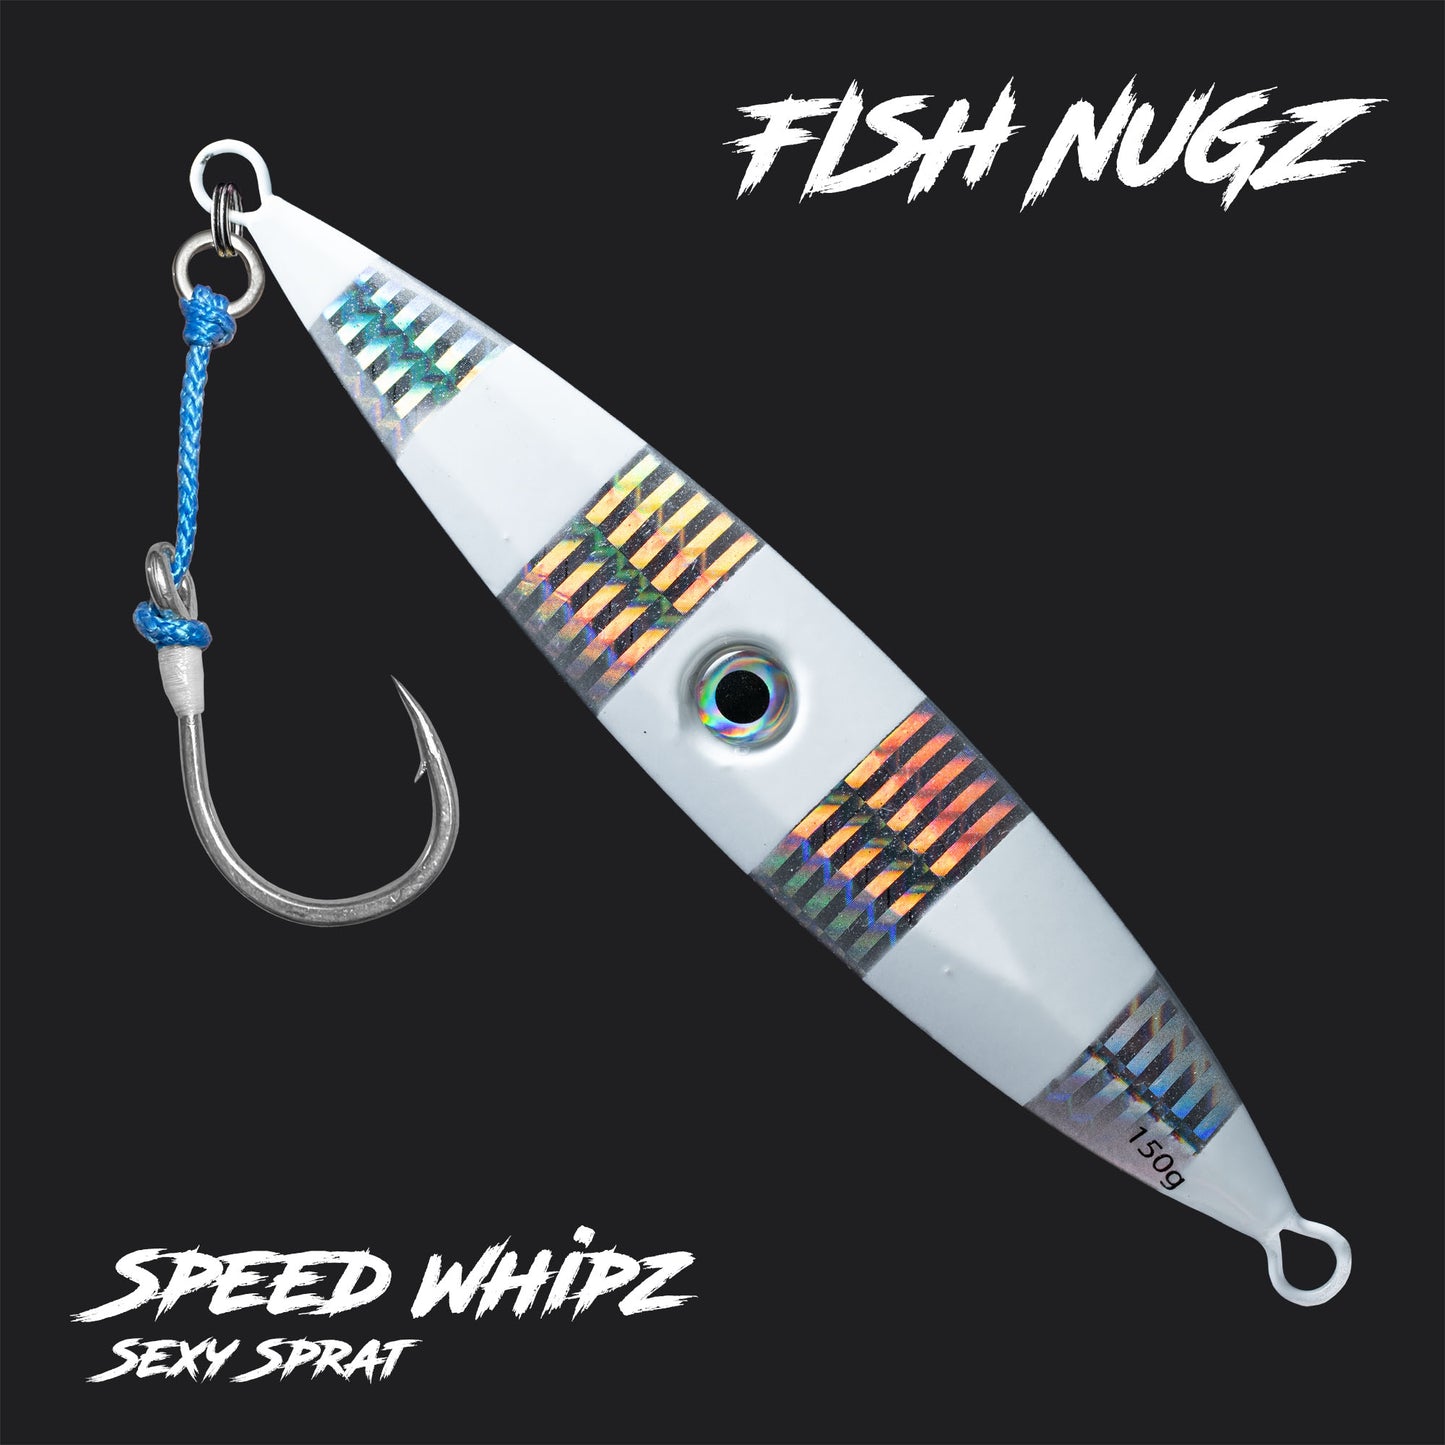 Fish Nugz Speed Whipz Jig in Sext Sprat Colour